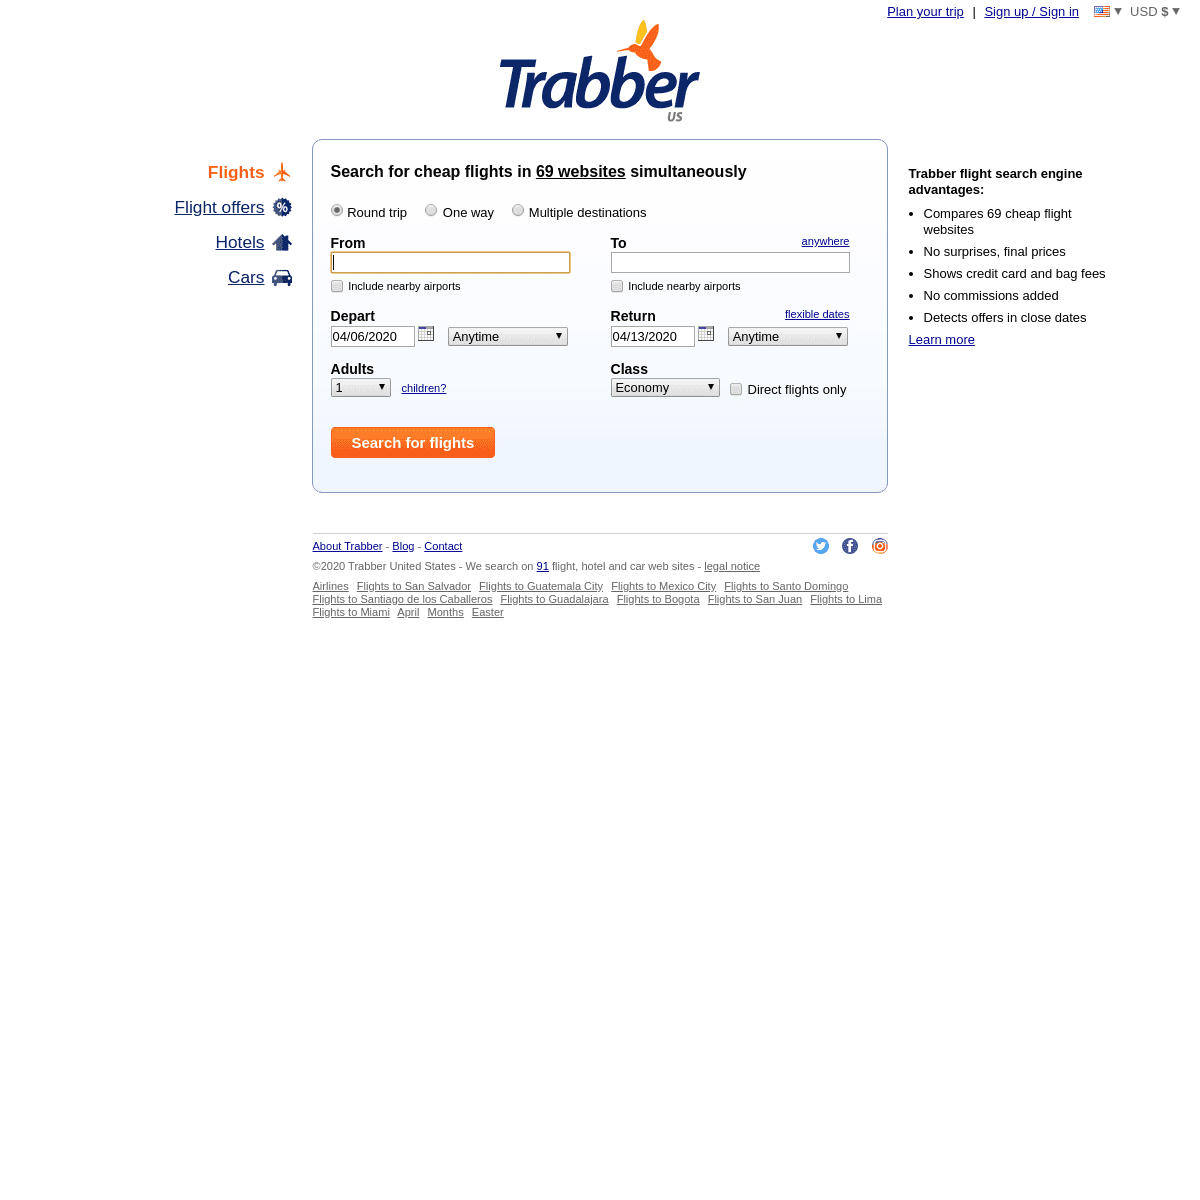 A complete backup of trabber.com